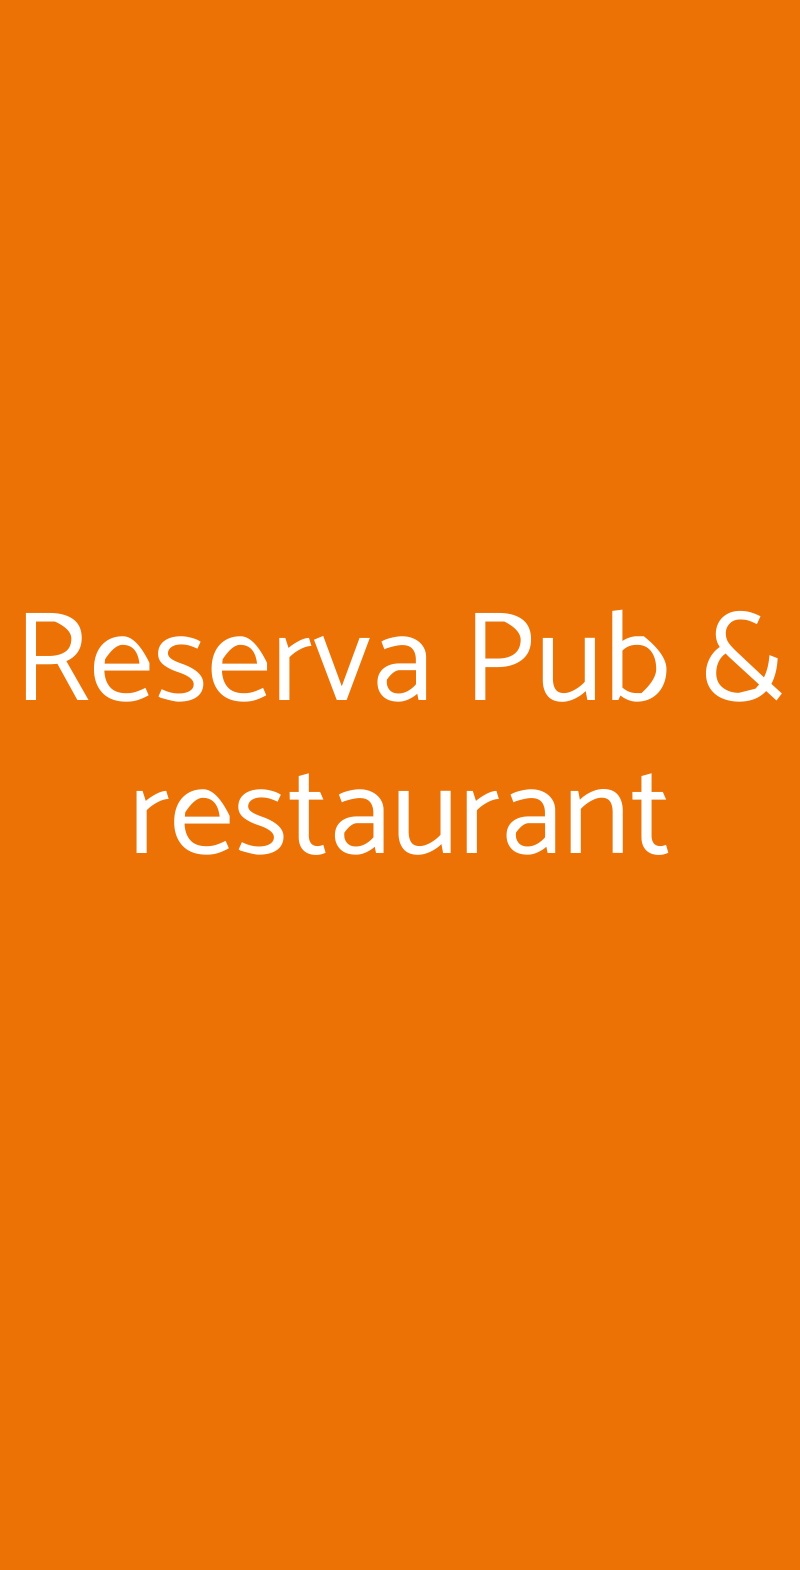 Reserva Pub & restaurant Mugnano del Cardinale menù 1 pagina